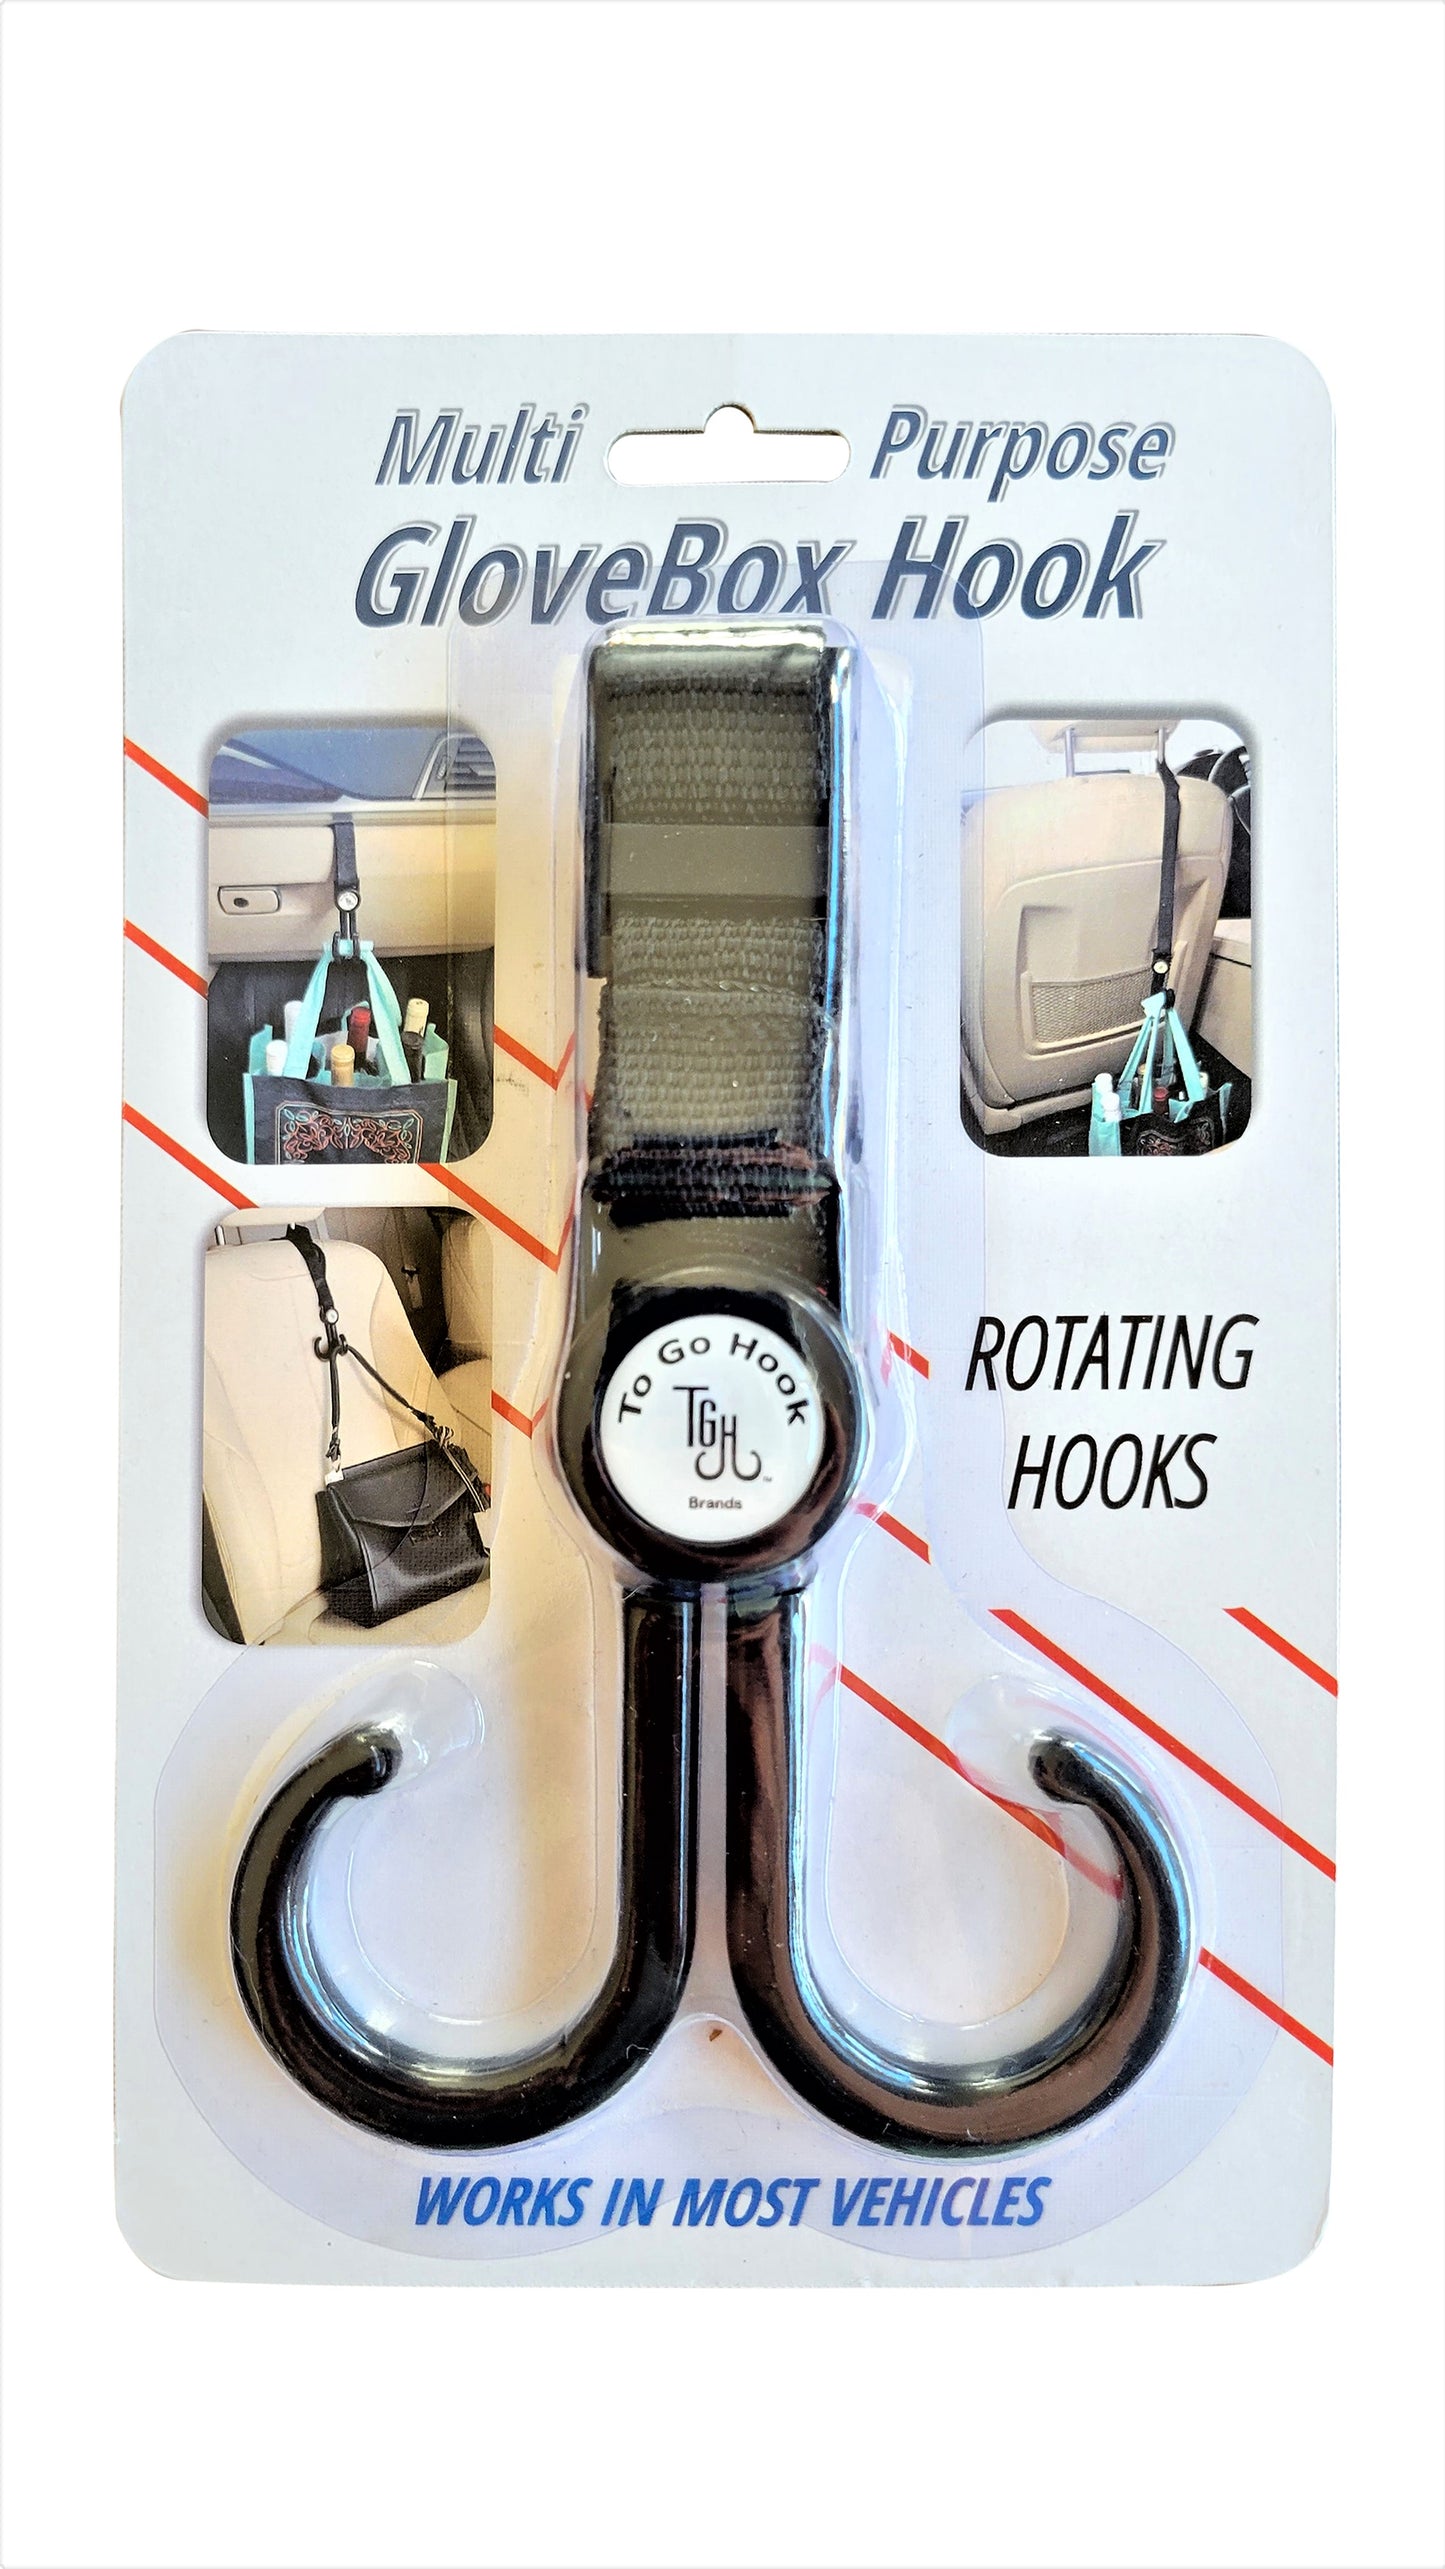 Multi-Purpose GloveBox Hook